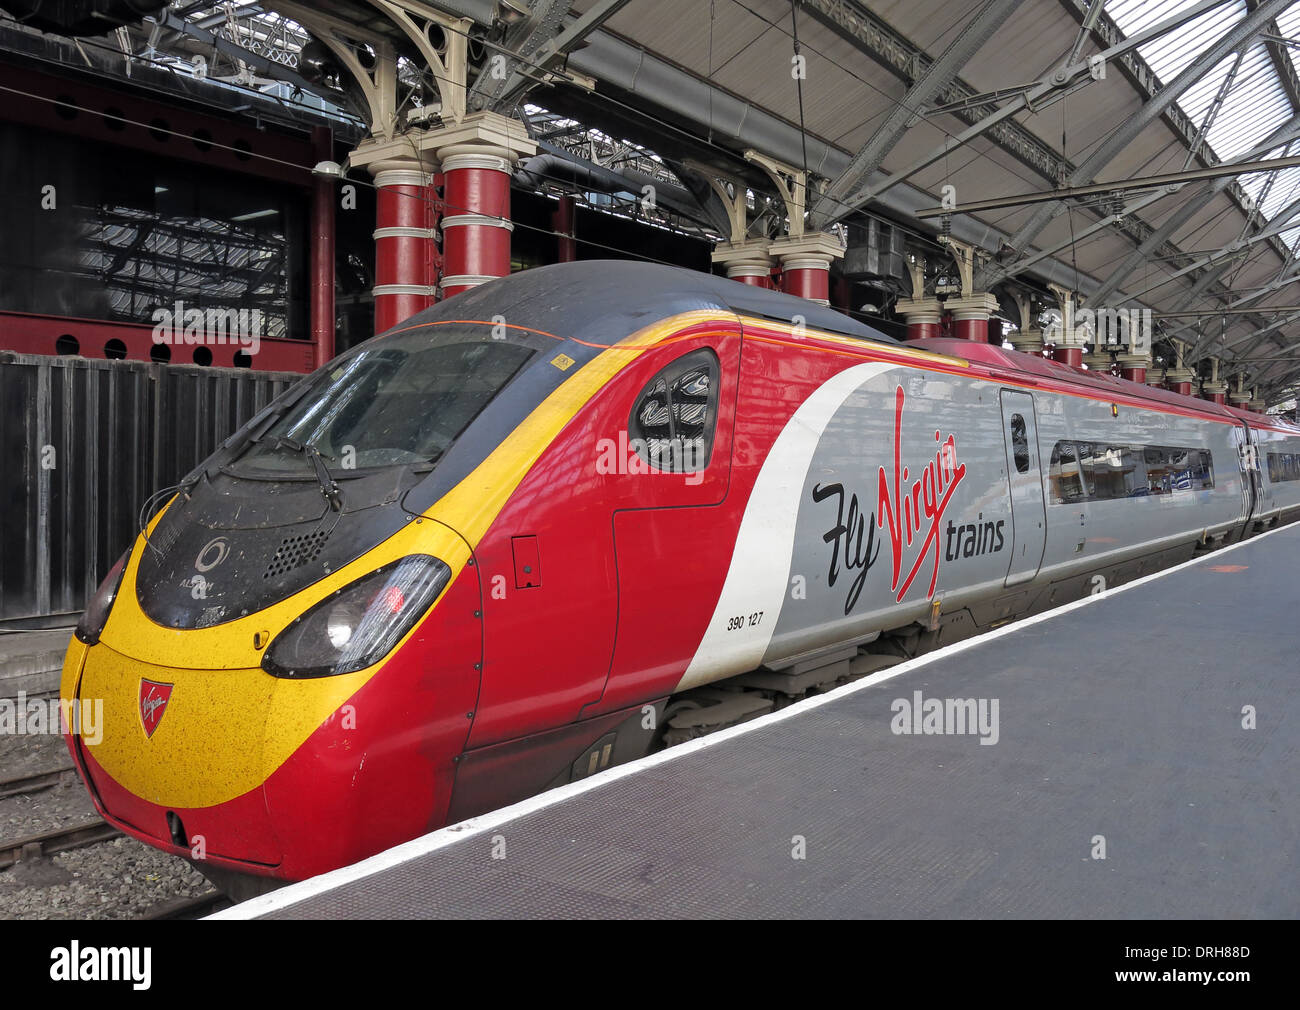 Fliegen Sie natives Züge UK - Liverpool Lime Street zu Euston - rot weiße & graue Lackierung Stockfoto